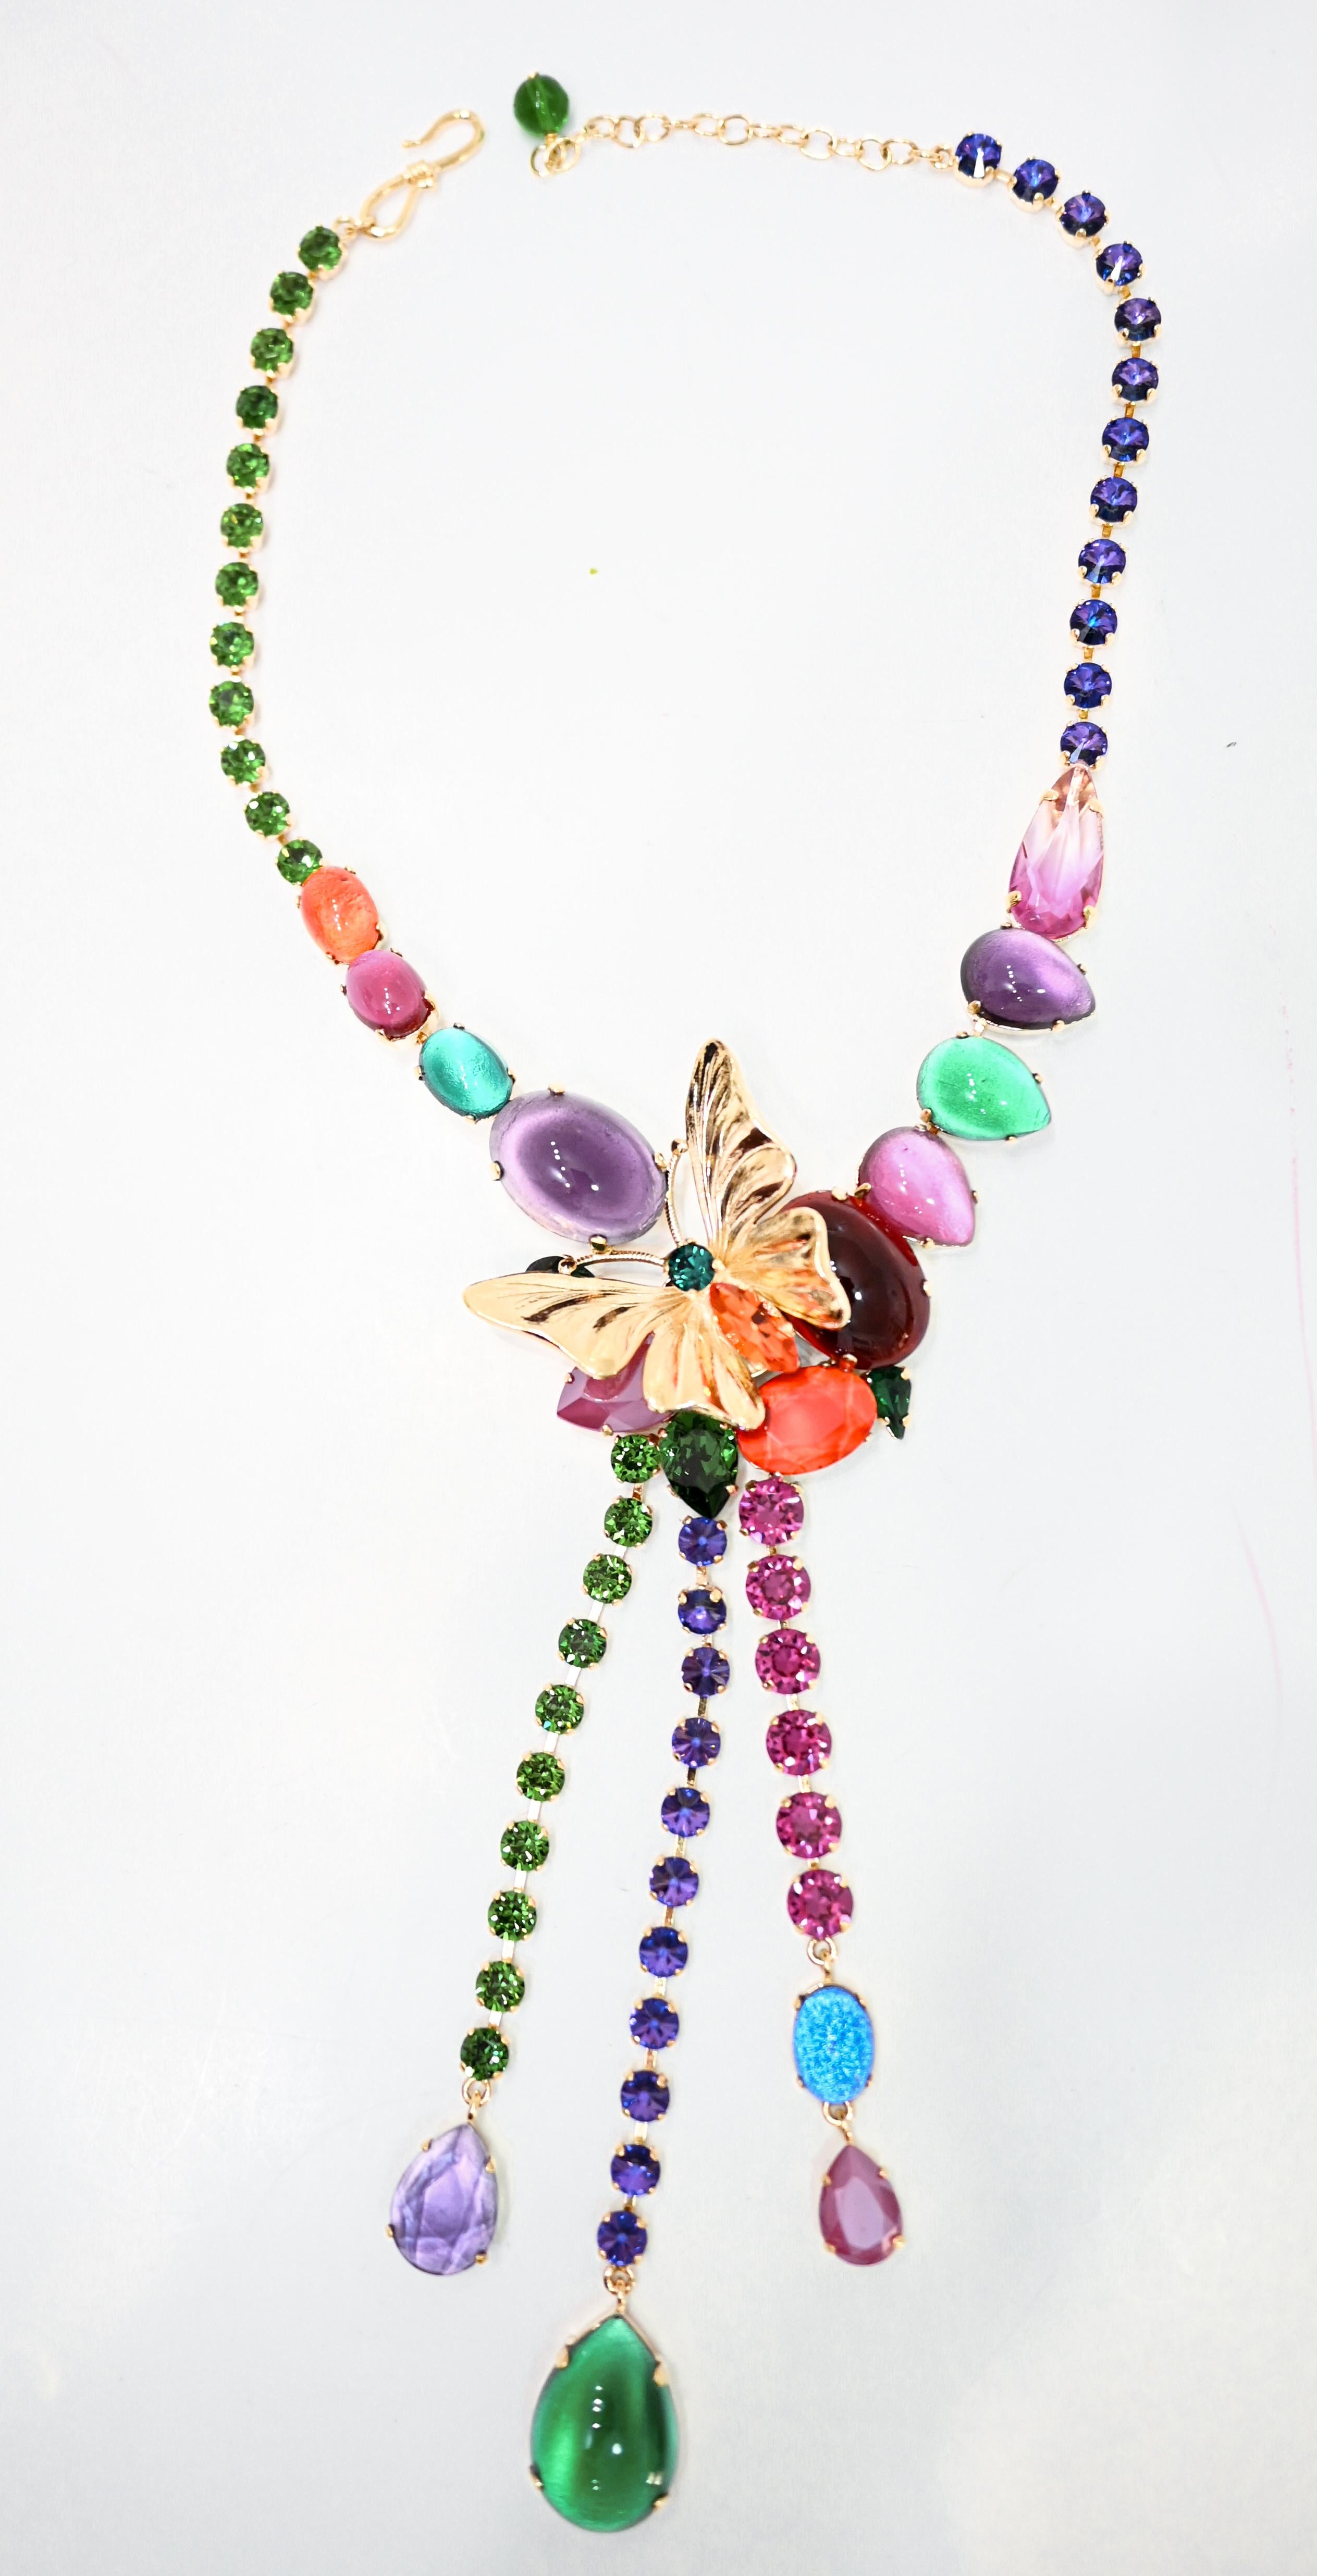 Il s'agit d'une pièce unique réalisée spécialement pour Isabelle K Jewelry. Les couleurs iconiques du designer comprennent également le papillon, l'un de ses accents préférés. Laiton trempé dans l'or 24 k, tous les cristaux Swarovski.

Le style et